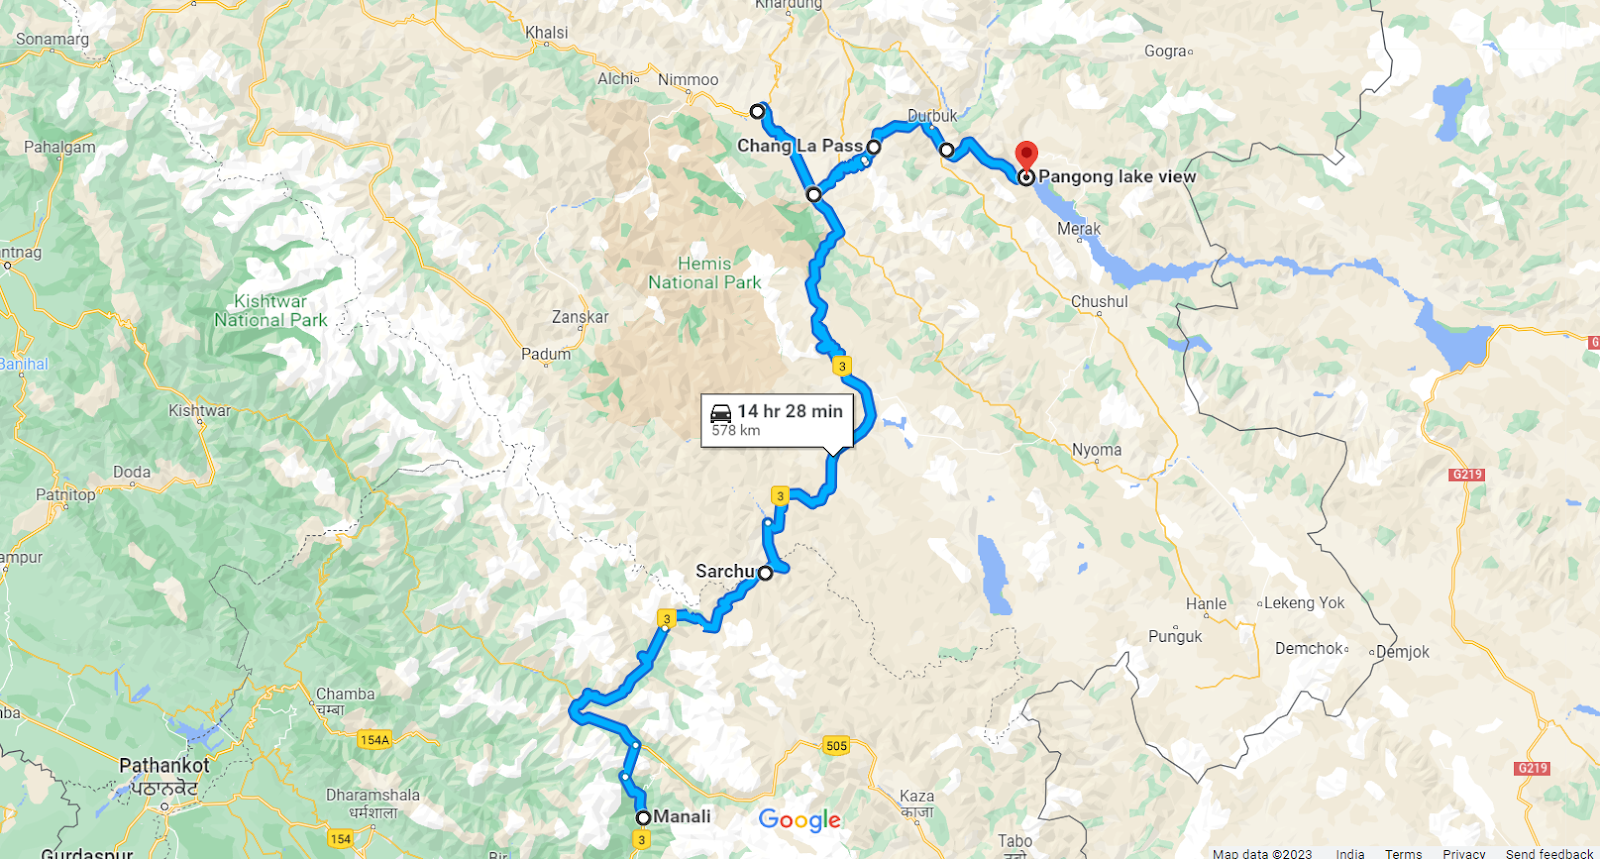 Route 3: Manali to Leh to  Pangong Lake
Manali>Sarchu>Karu>Leh>Karu>Chang La Pass>Tangtse Check Post>Pangong Lake
